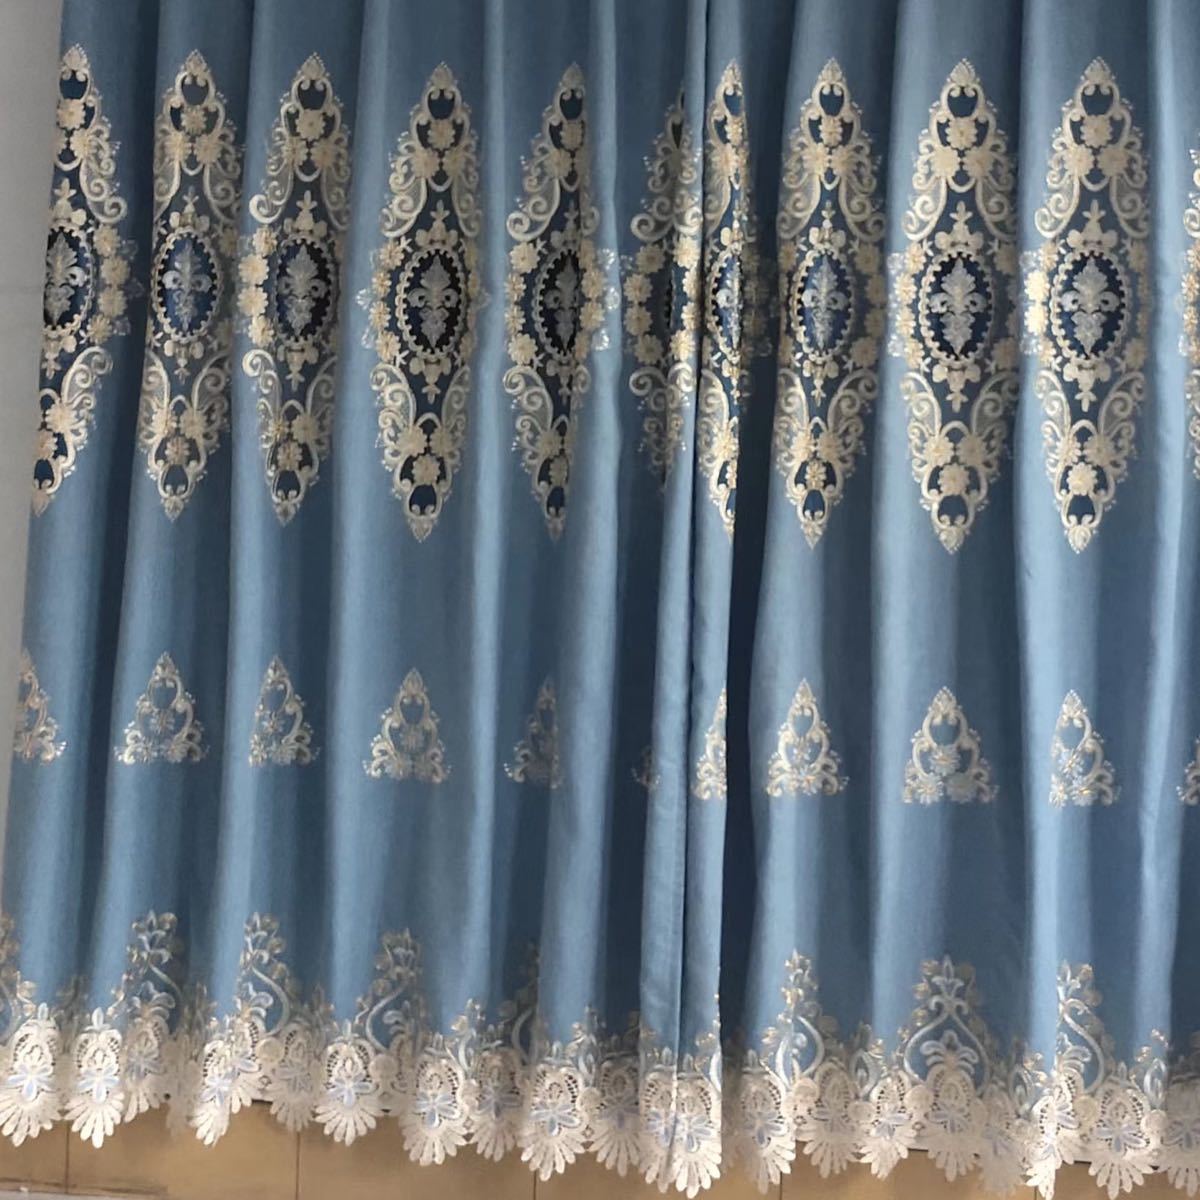 ドレープカーテン オーダーサイズ ブルー おしゃれ 刺繍 柄 生活雑貨 新居 花柄 カーテン幅 ボイルカーテン 遮光 遮光カーテン